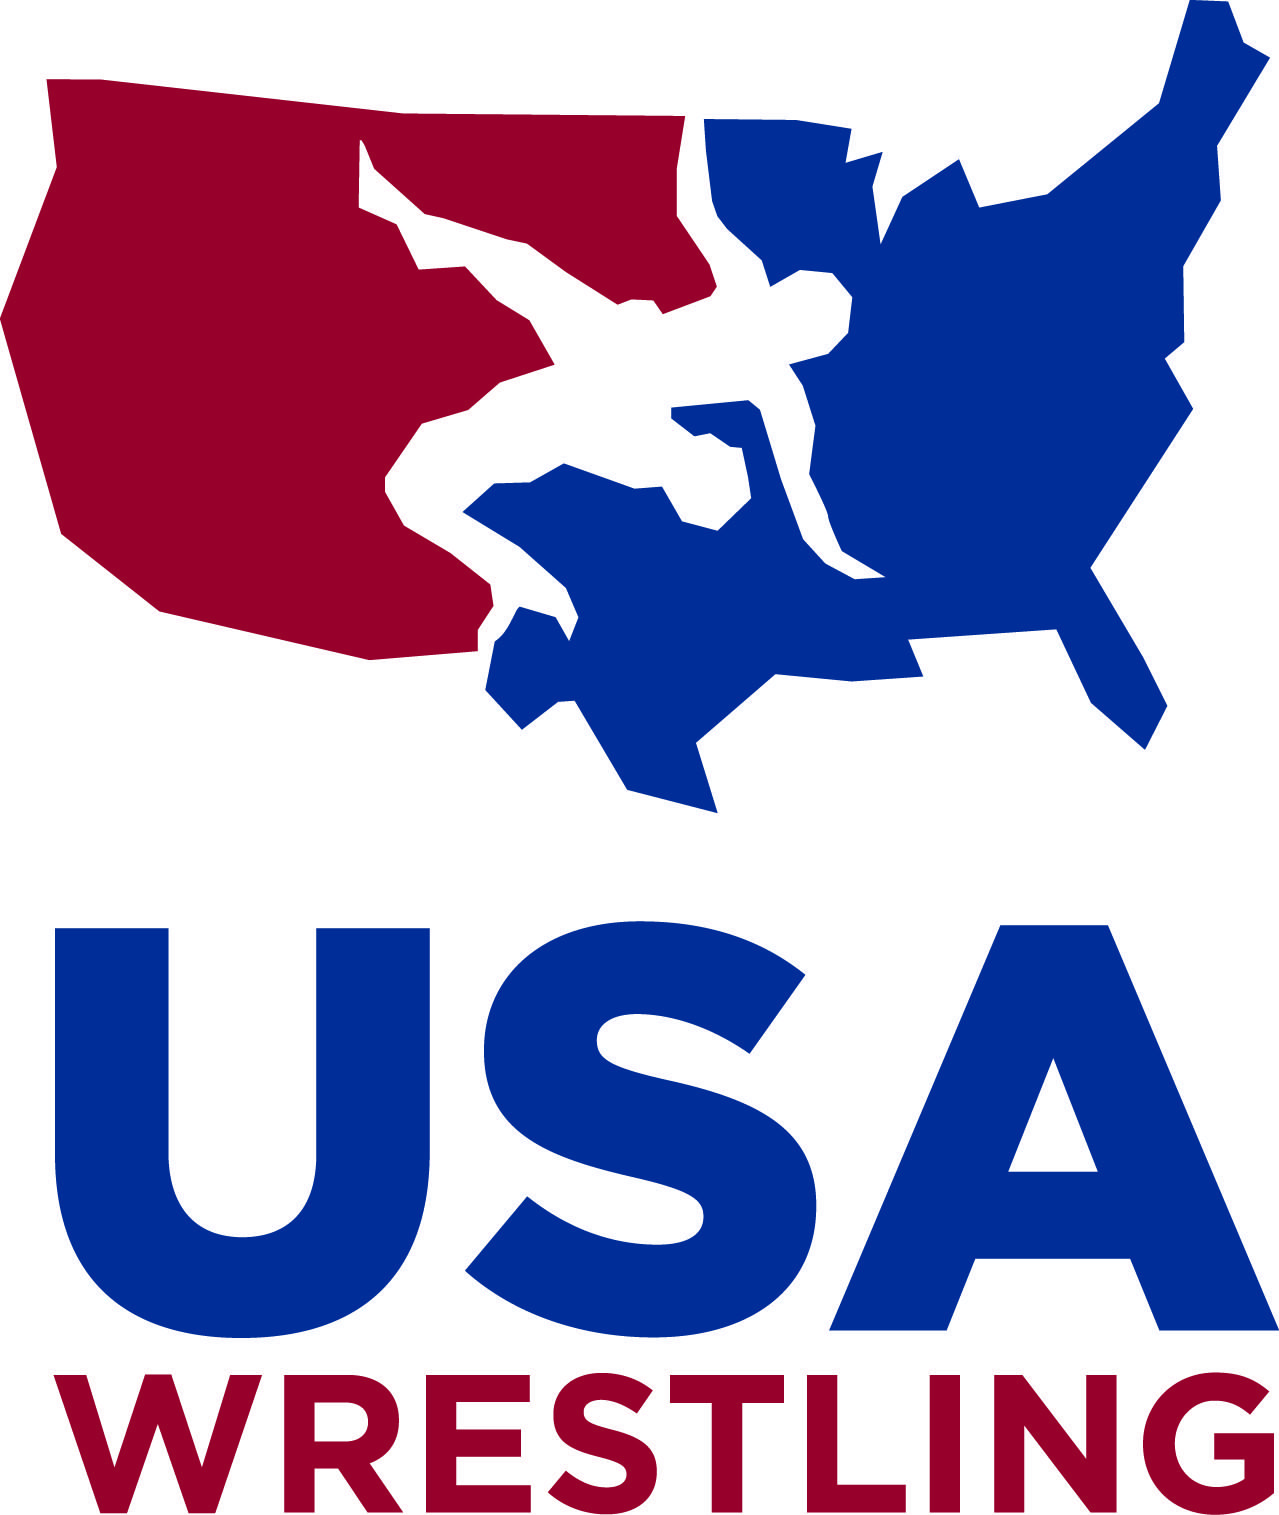 Wrestling Logo - New USA Wrestling Logo [v] Final - National Girls & Women in Sports Day